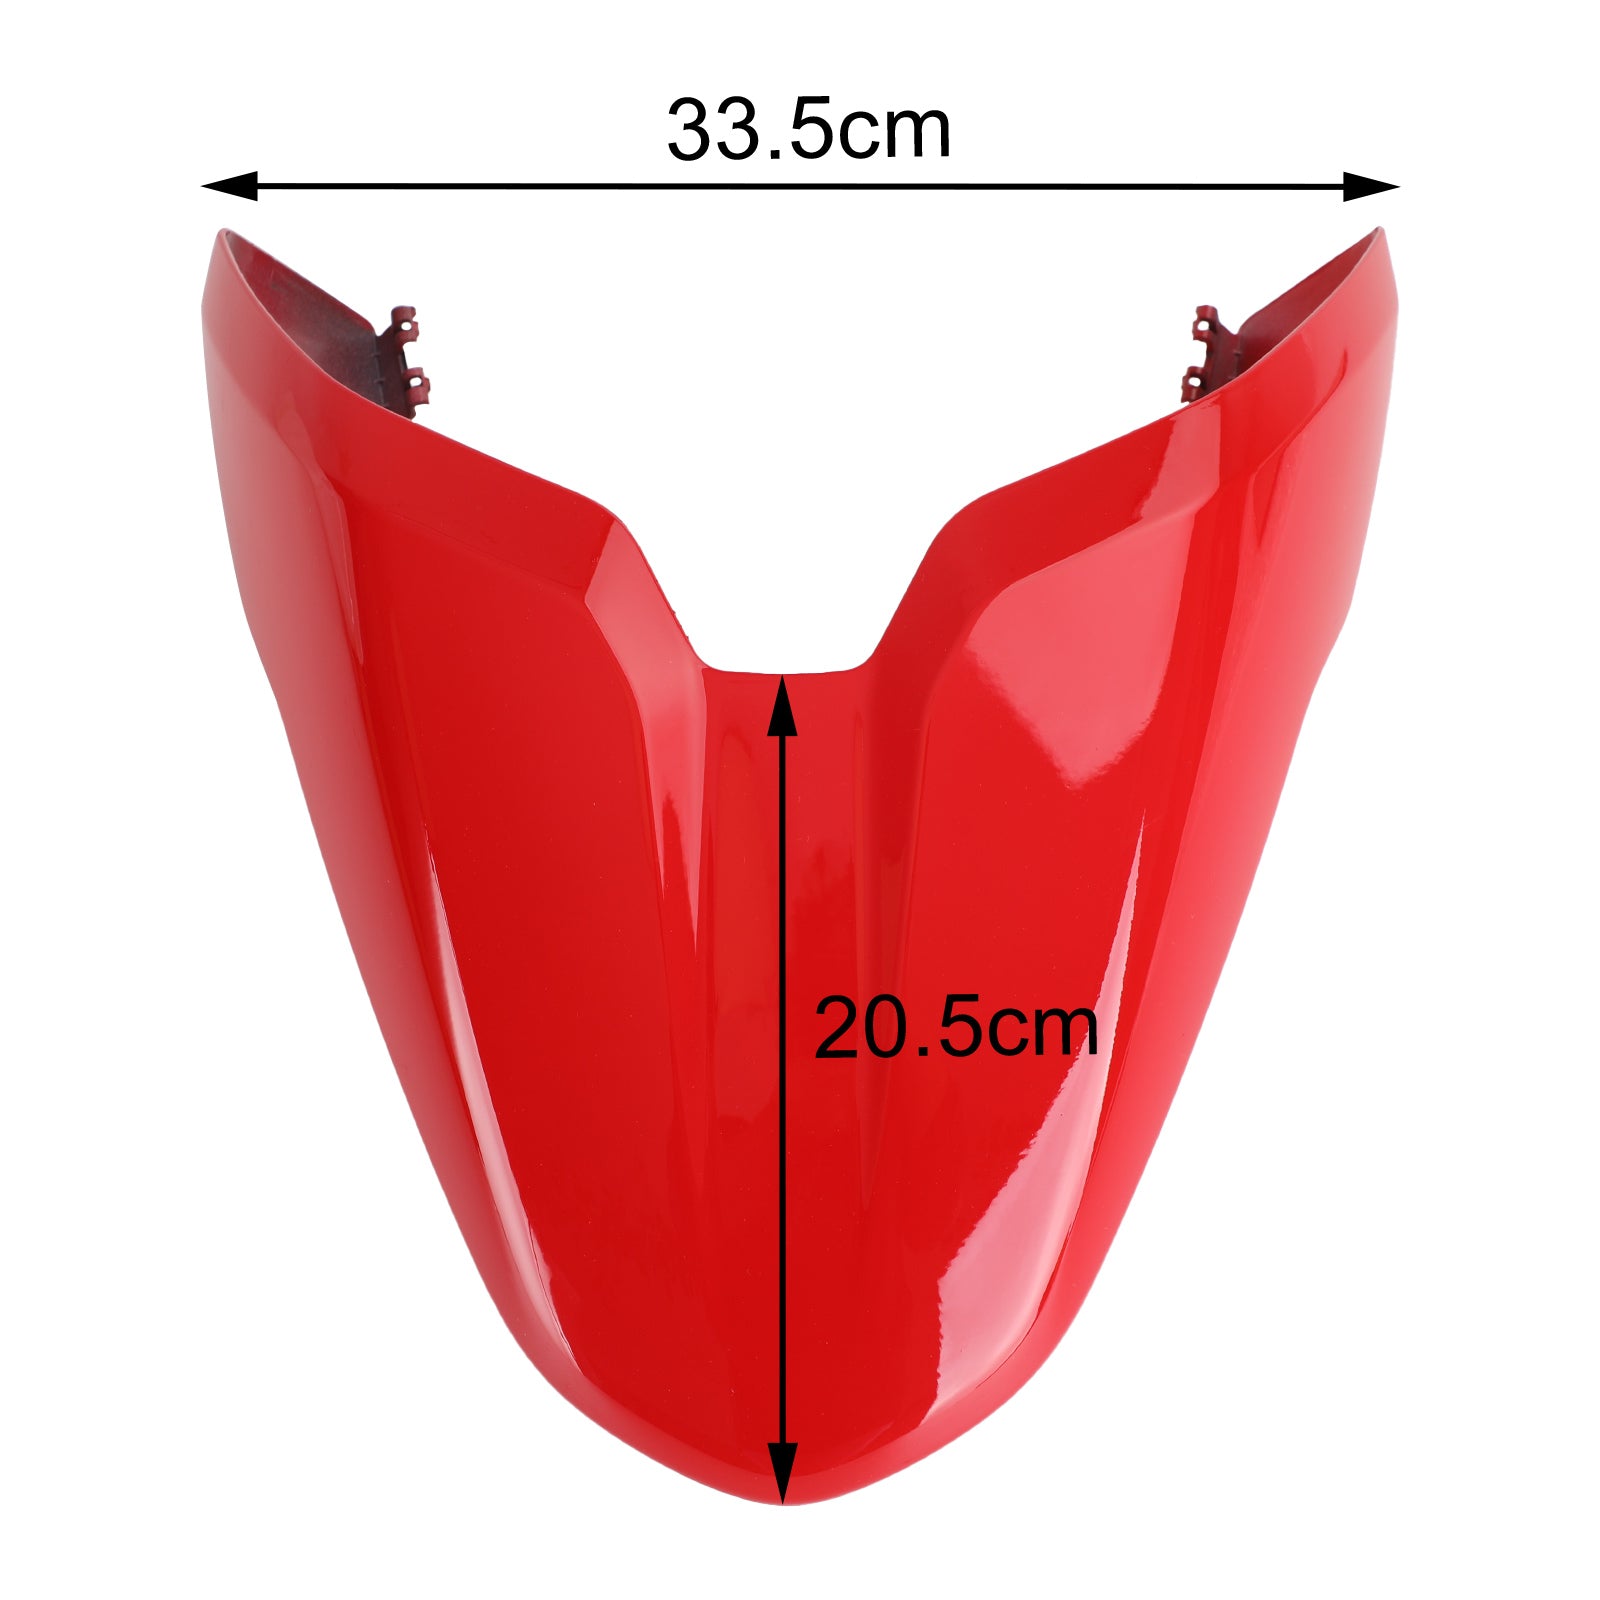 Rear Passenger/Pillion Seat Cover Fairing For Ducati Monster 797 821 1200 Red